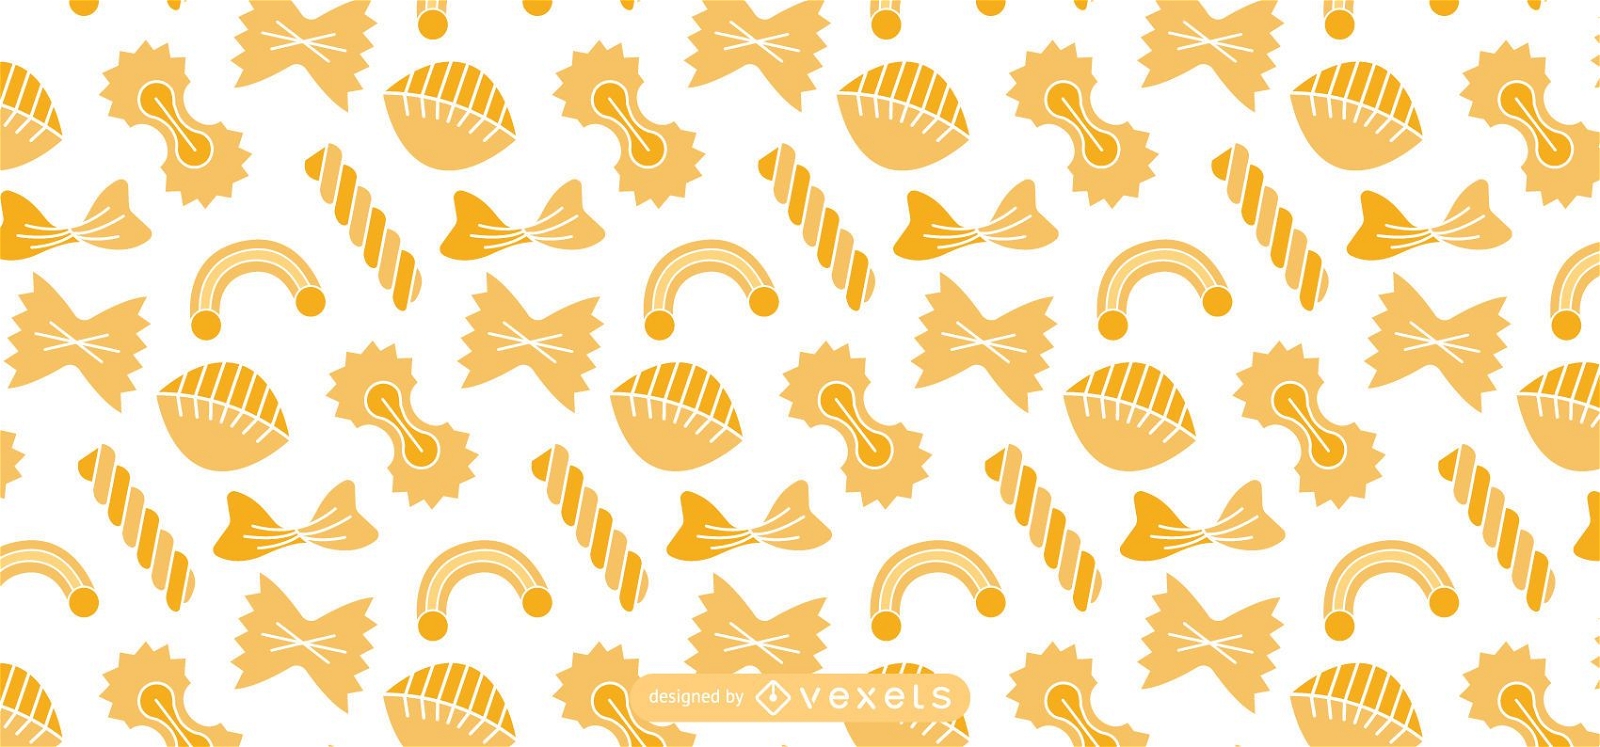 Italian pasta pattern design